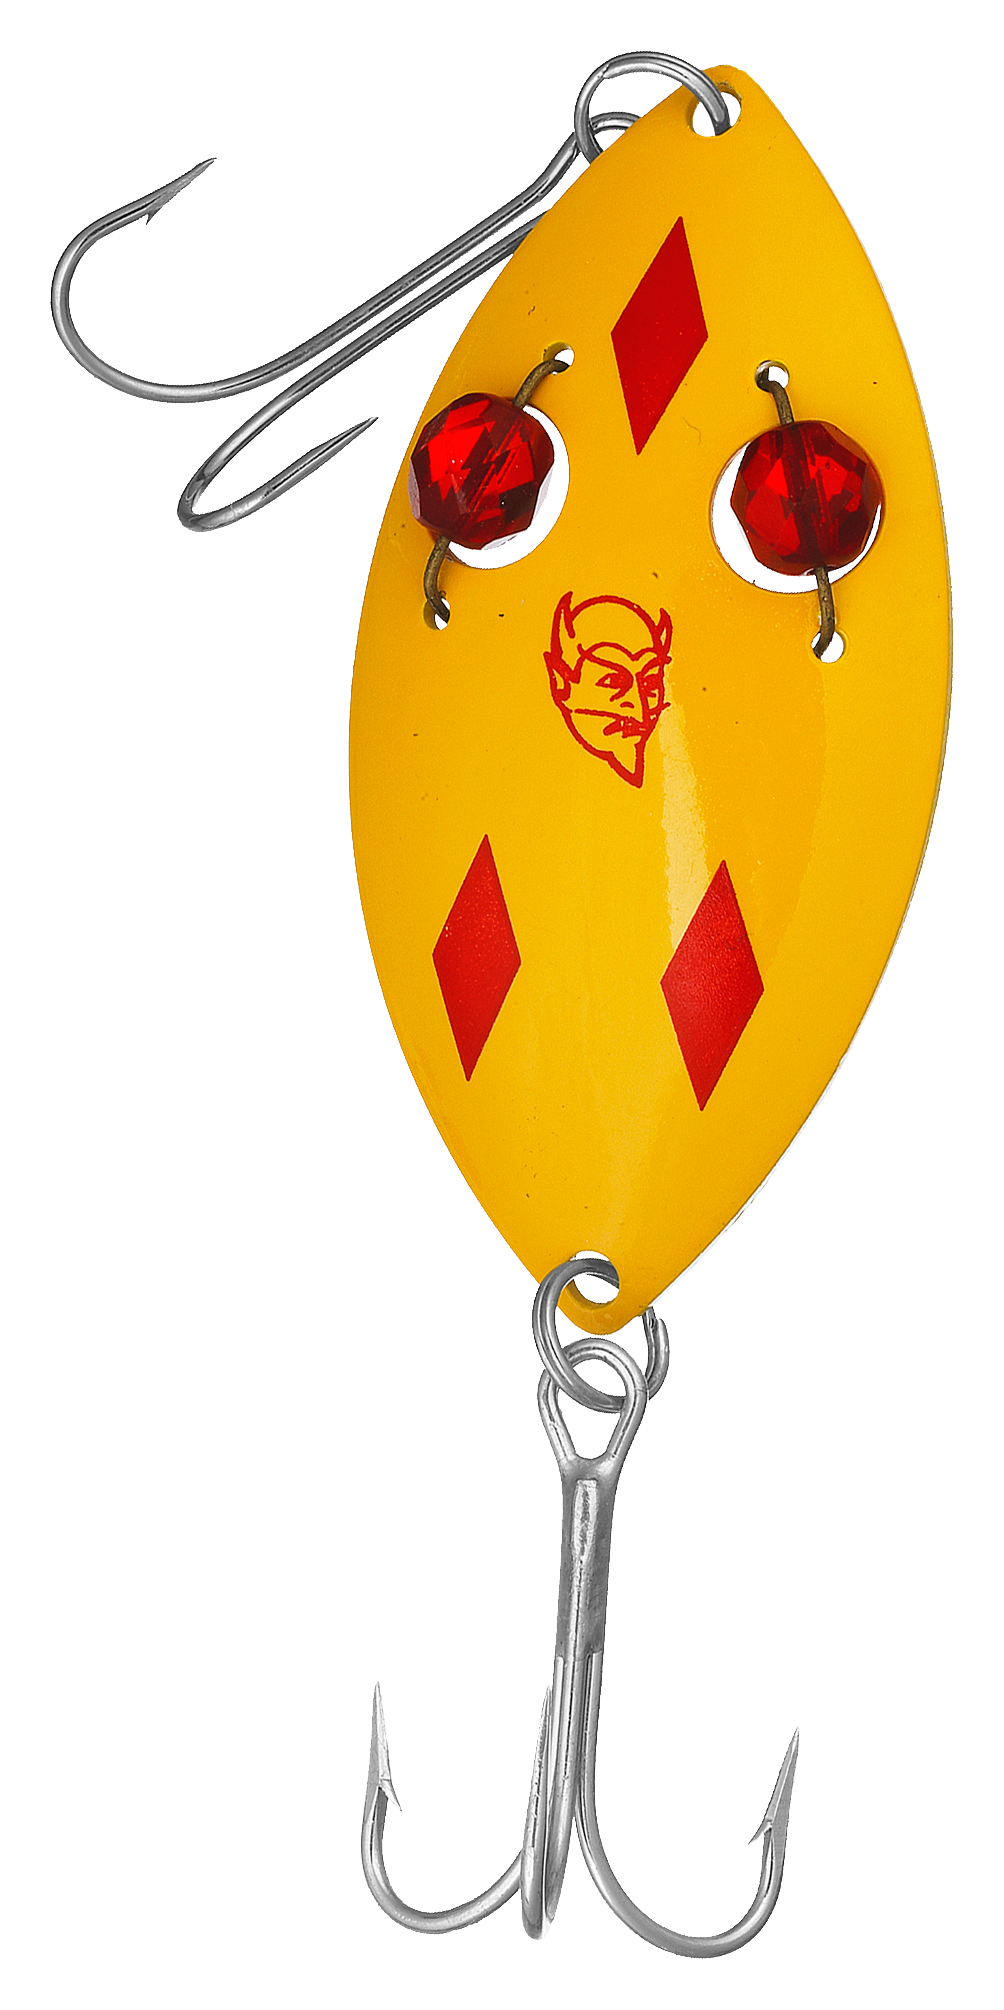 Vintage Fishing Lure - DFT Canada 61 Red Eye Wiggler Spoon